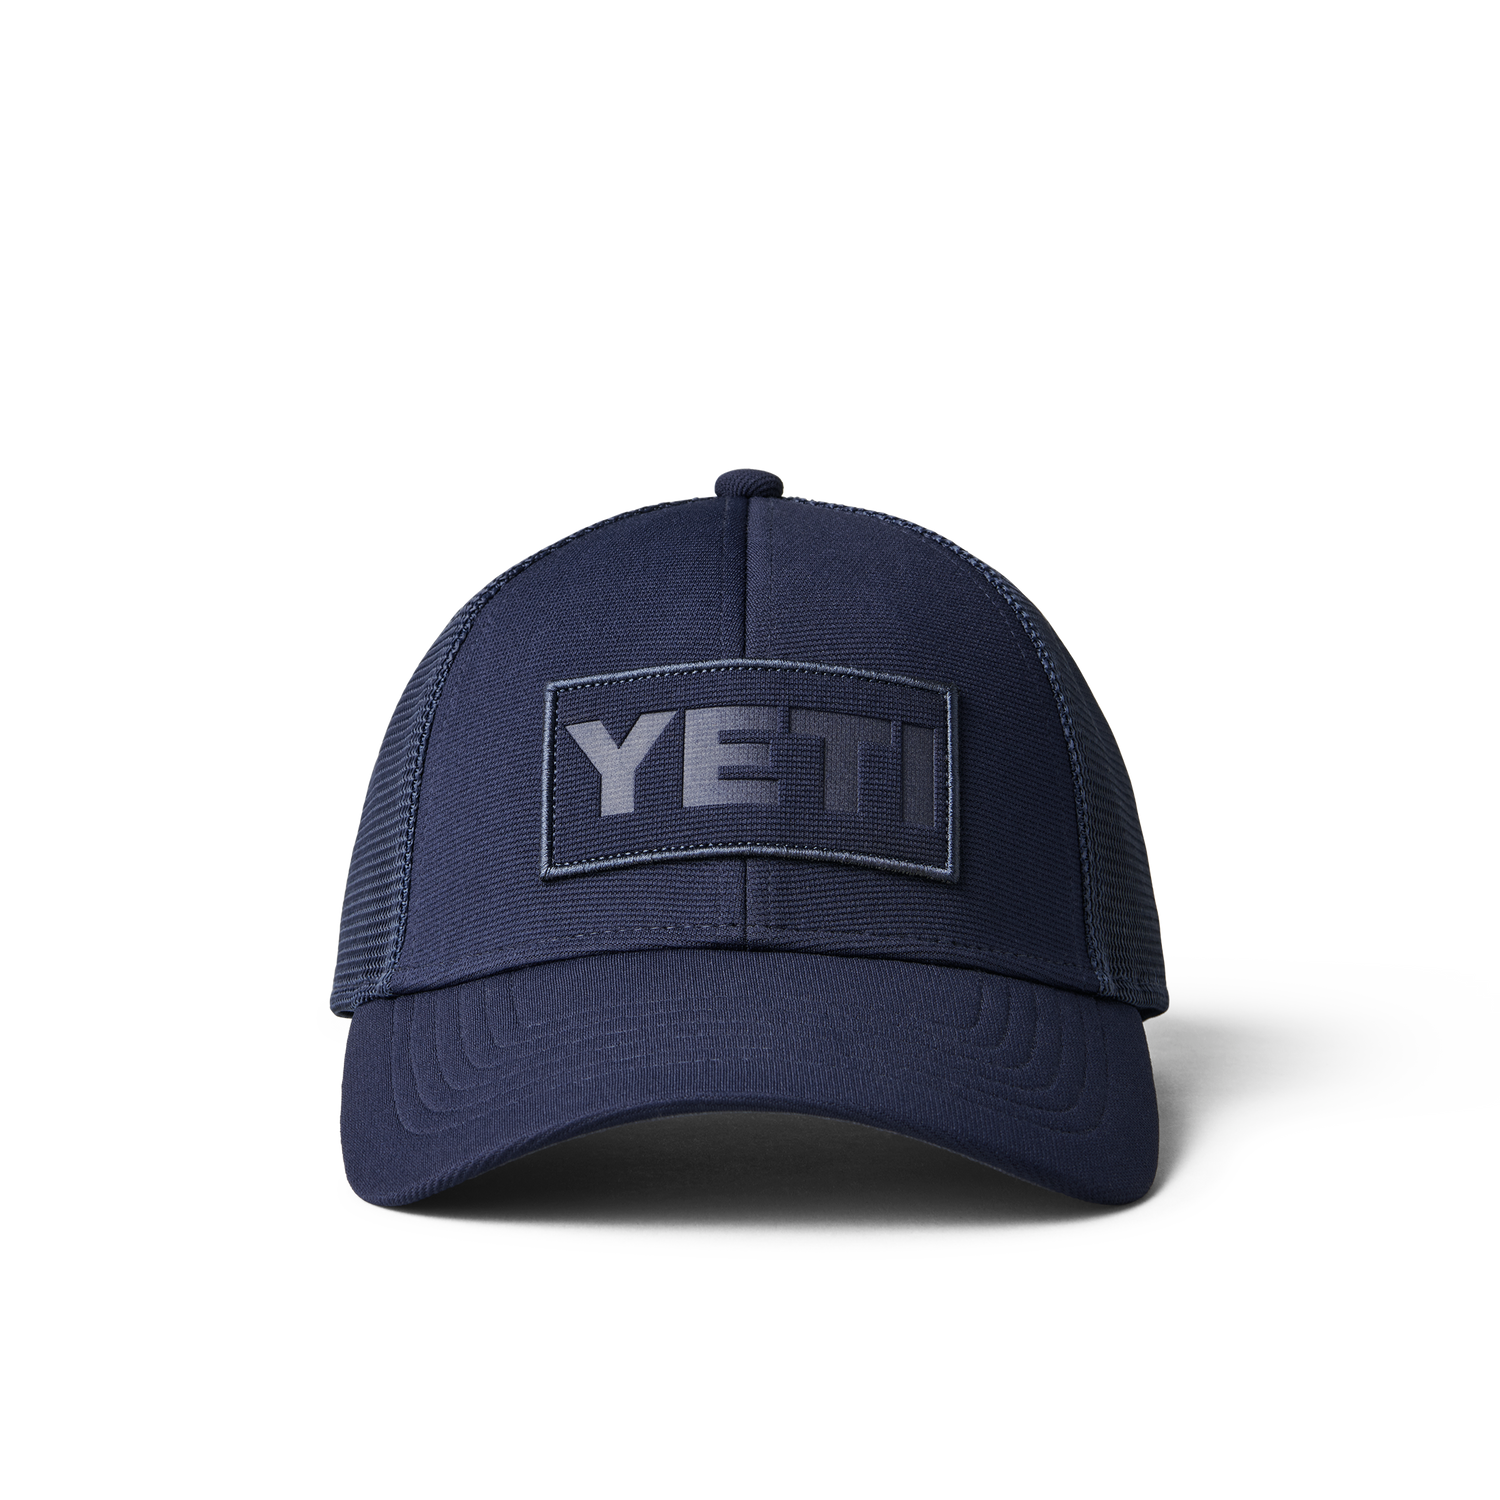 YETI Core Patch Trucker Hat Navy on Navy Navy/Navy